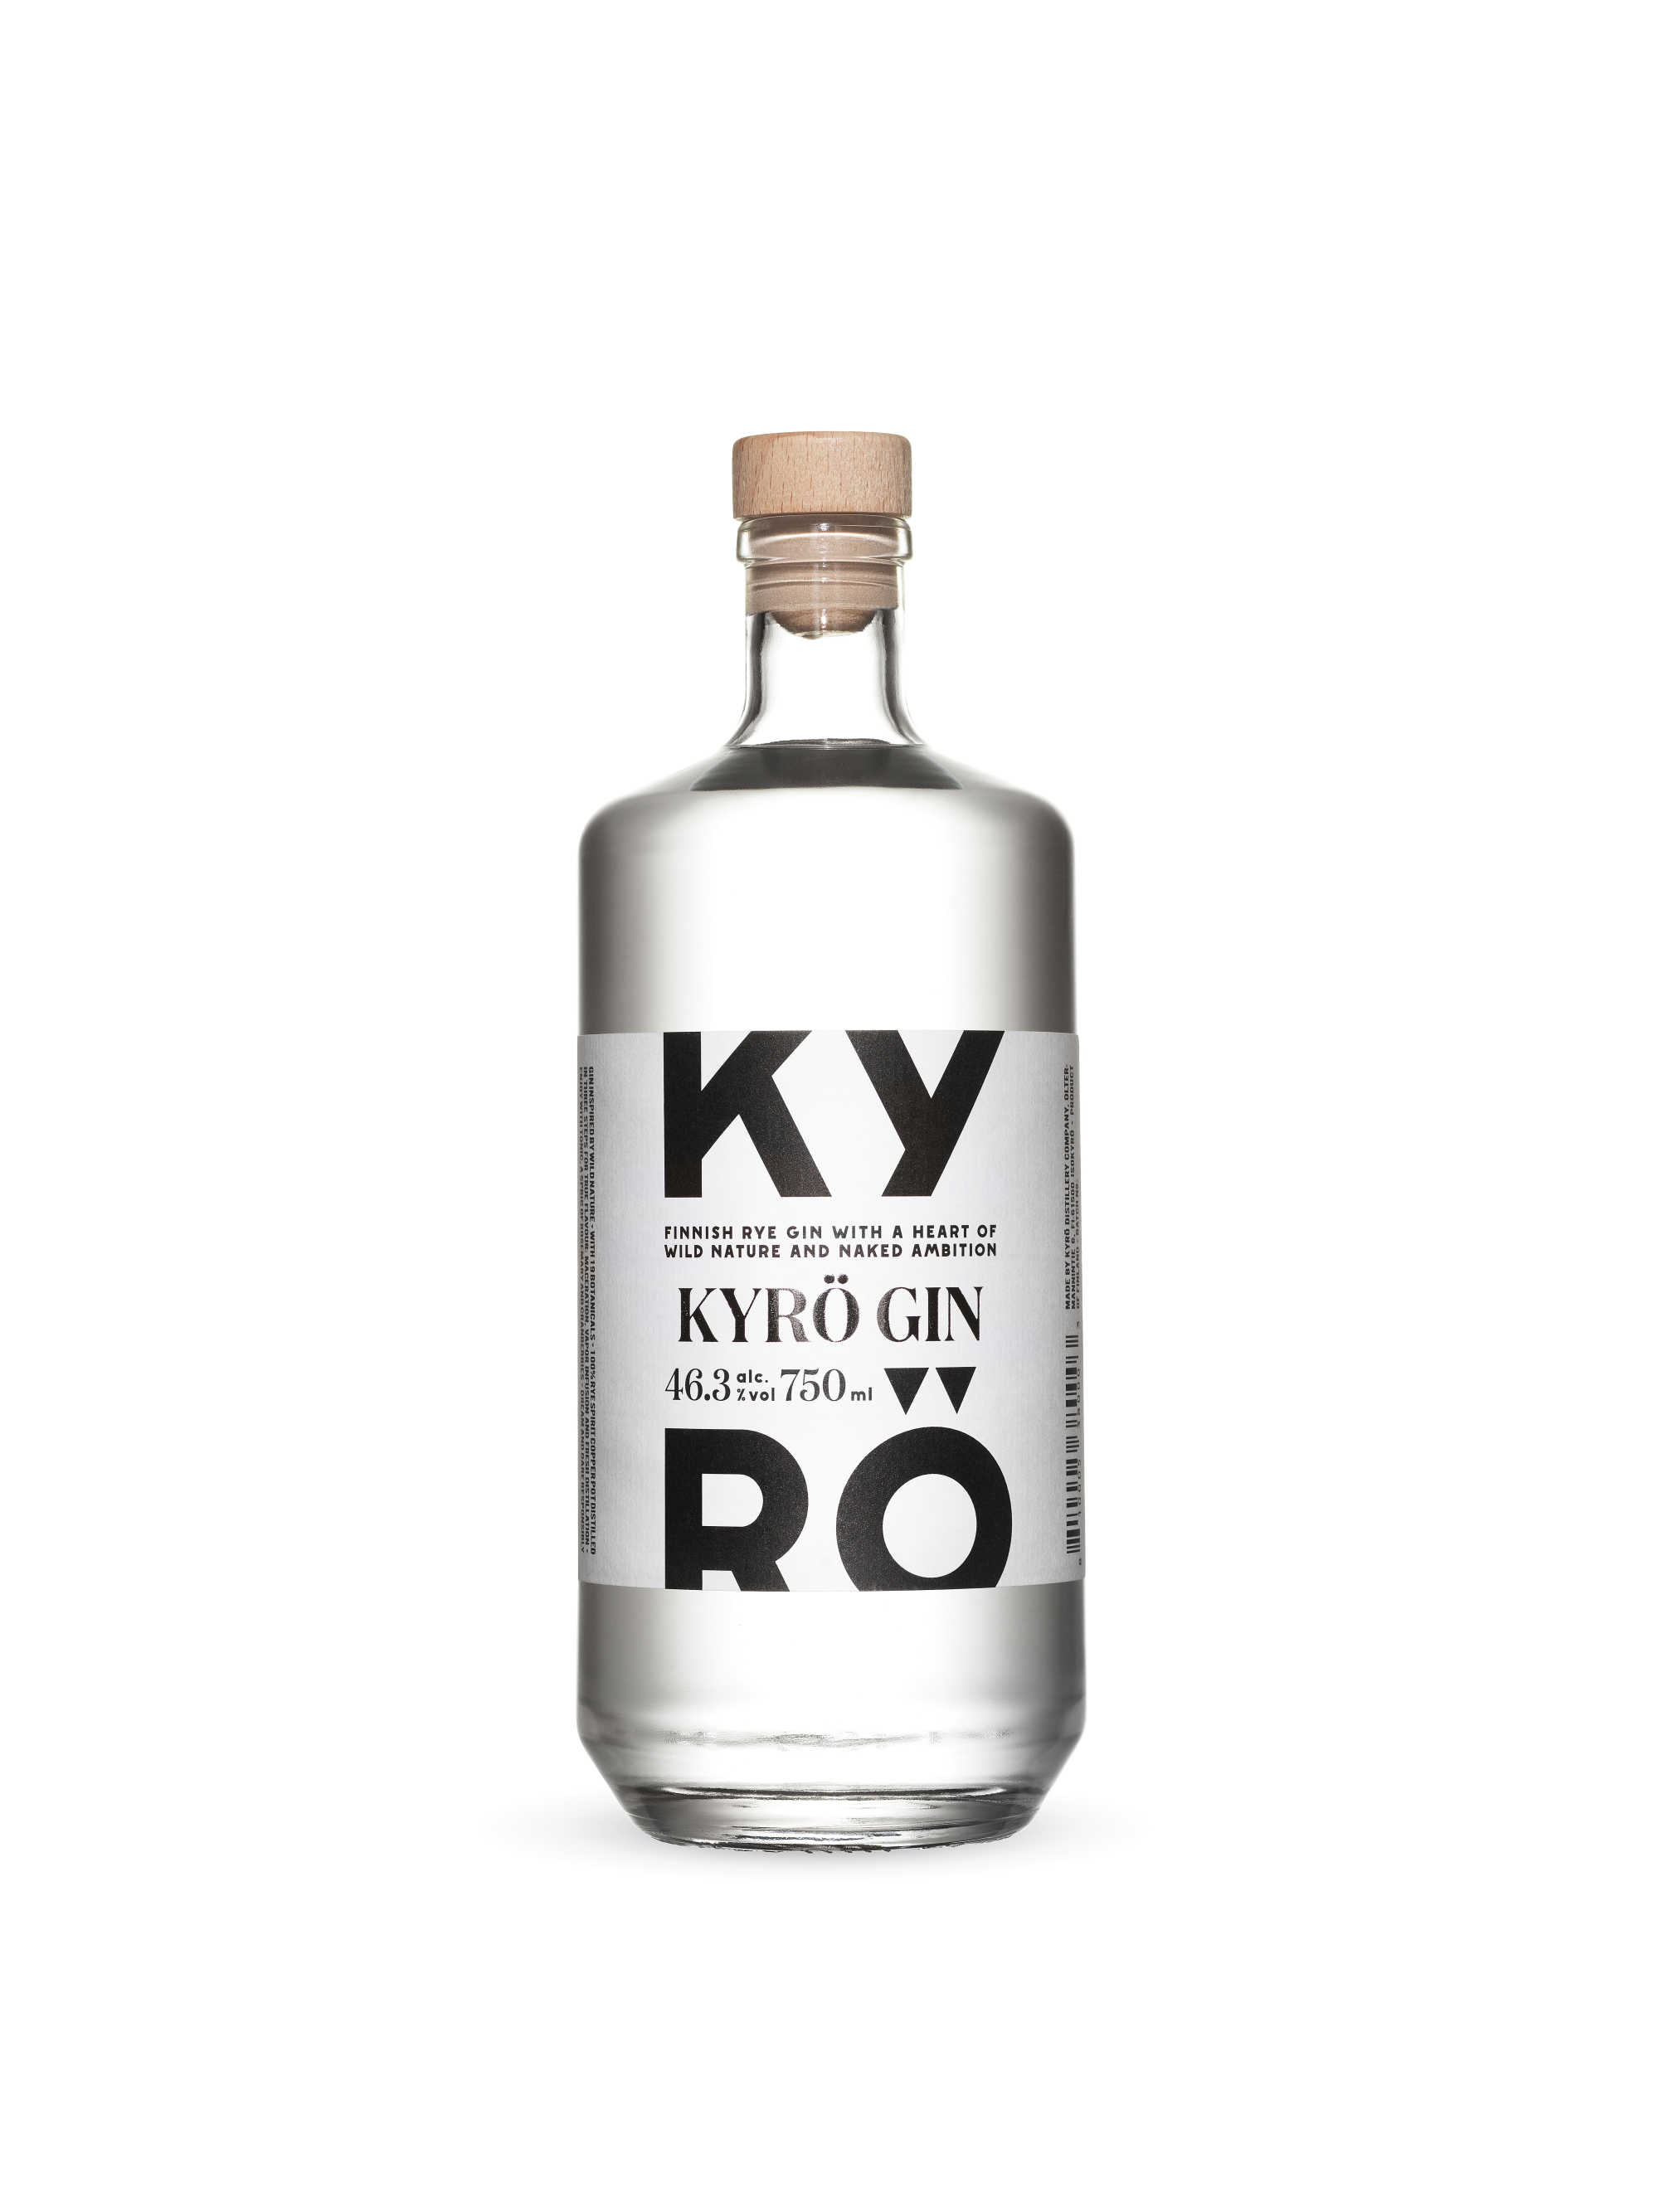 750 ml pullo kansainvälisesti palkittua Kyrö Giniä, joka aiemmin tunnettiin nimellä Napue Gin.